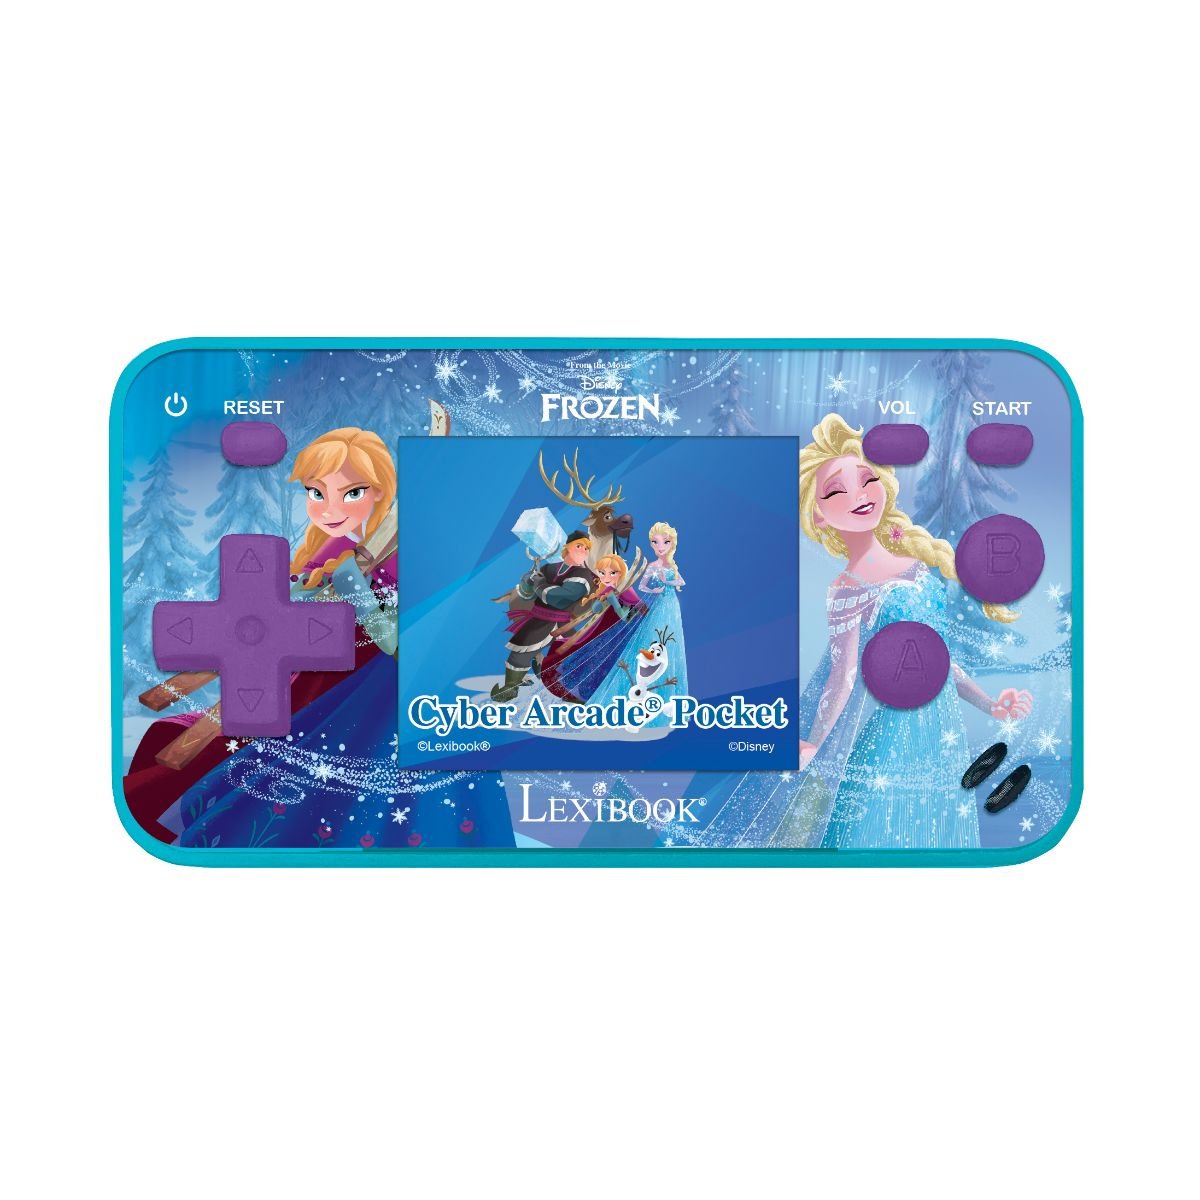 Consola portabila Cyber Arcade, Lexibook, 150 Jocuri Disney Frozen